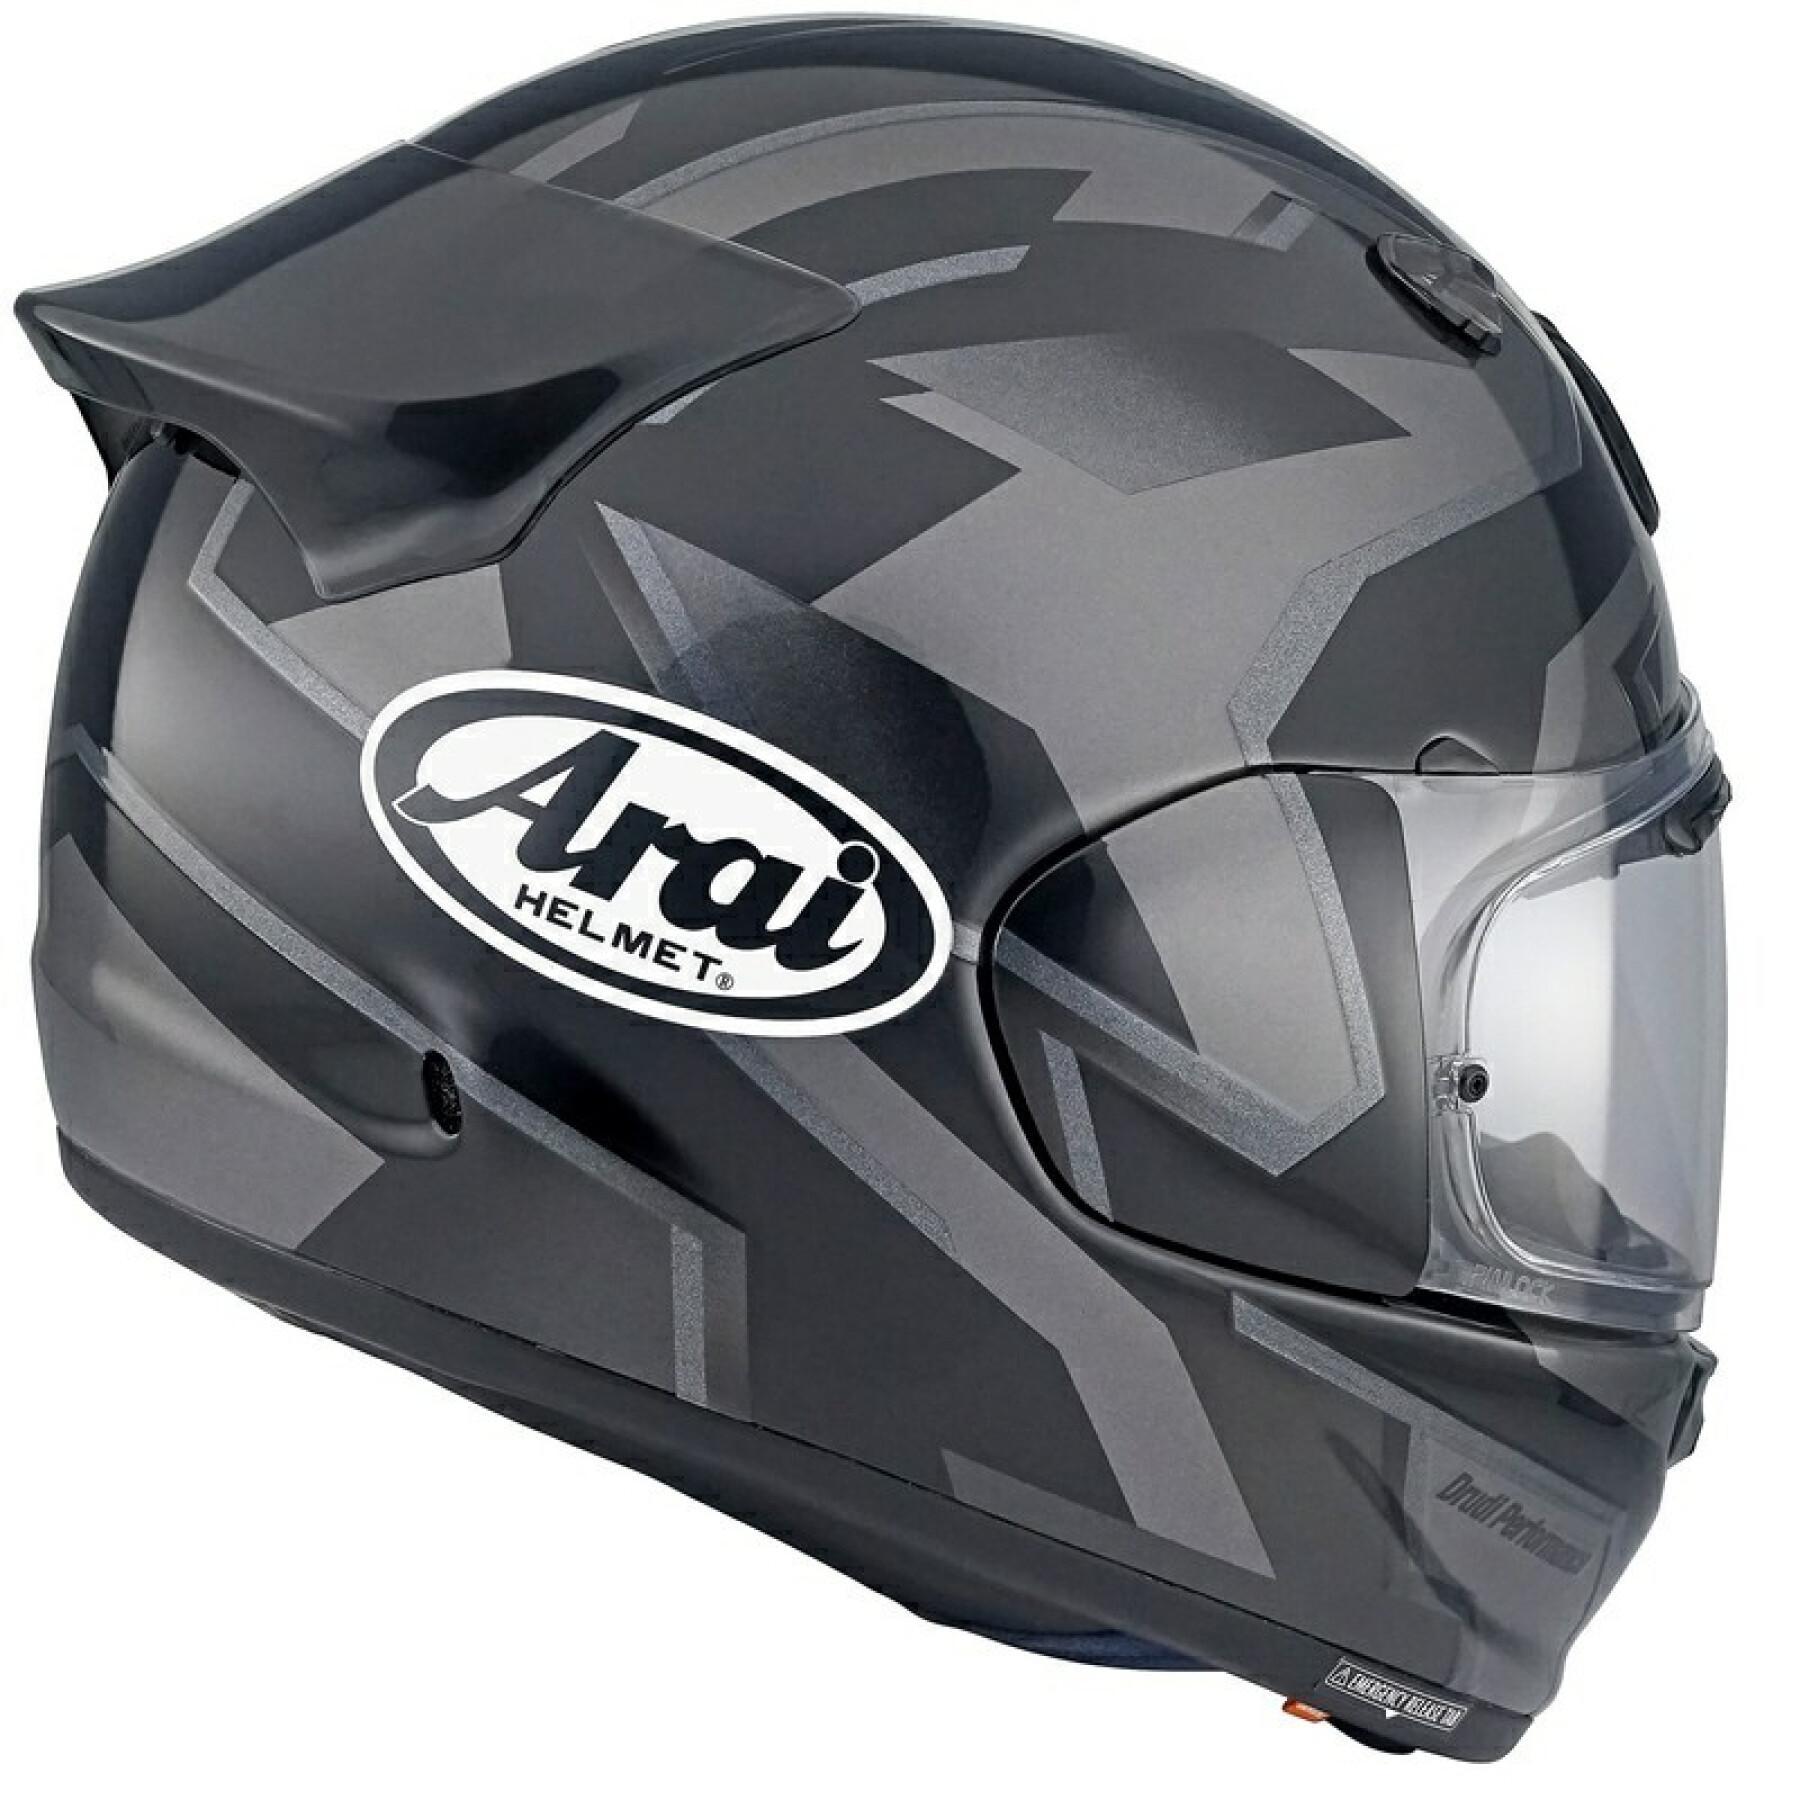 Full face motorcycle helmet Arai Quantic Robotic